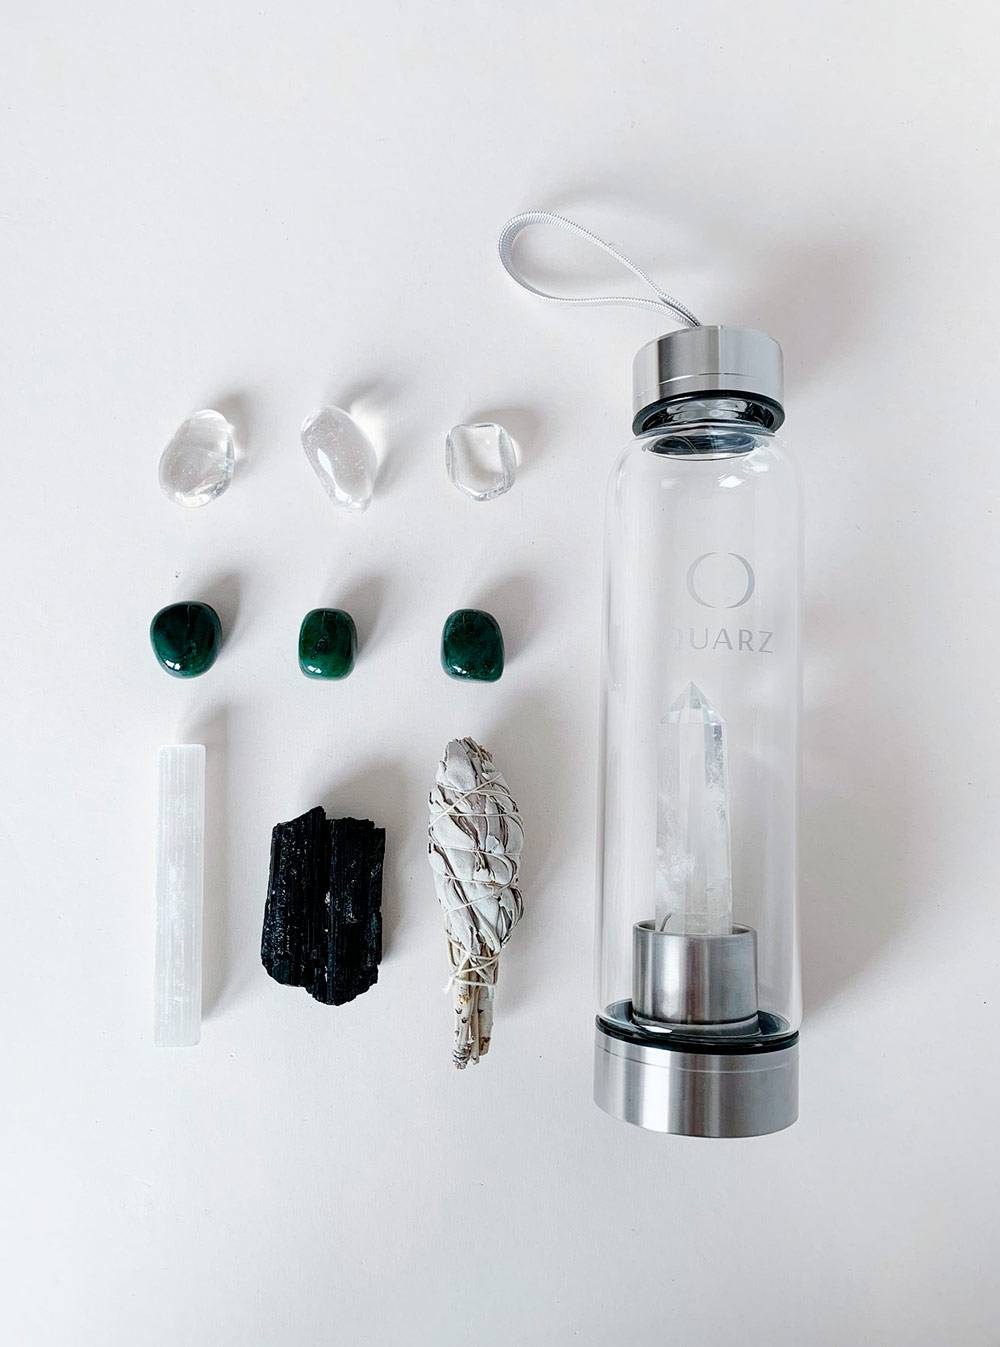 Так выглядят наборы Quarz — бутылка с прозрачным кристаллом, палочка селенита, черный турмалин